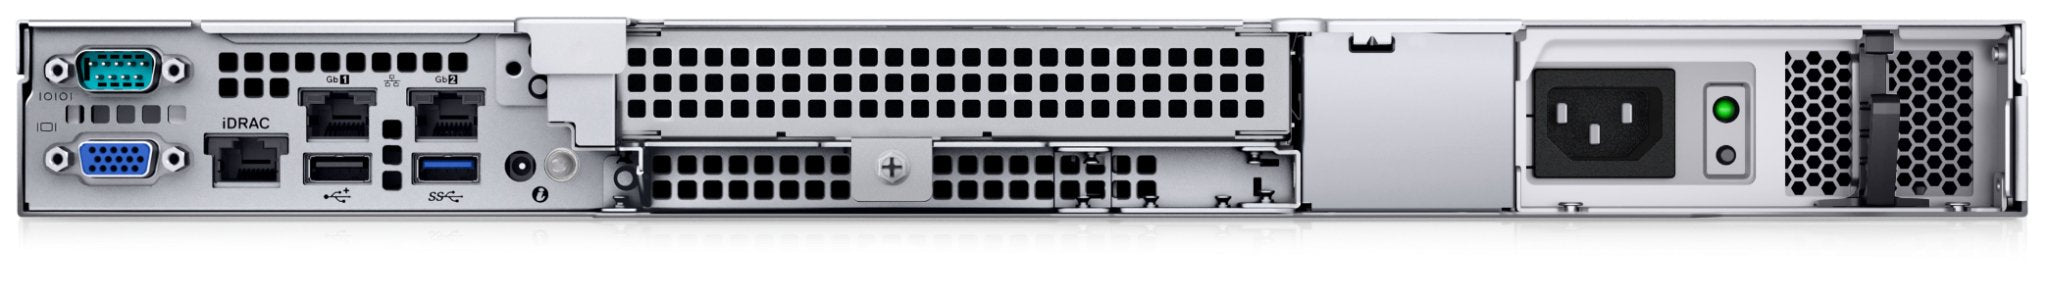 Сервер Dell PowerEdge R250 - Intel Xeon E-2388G 3.2Ghz 8 Cores